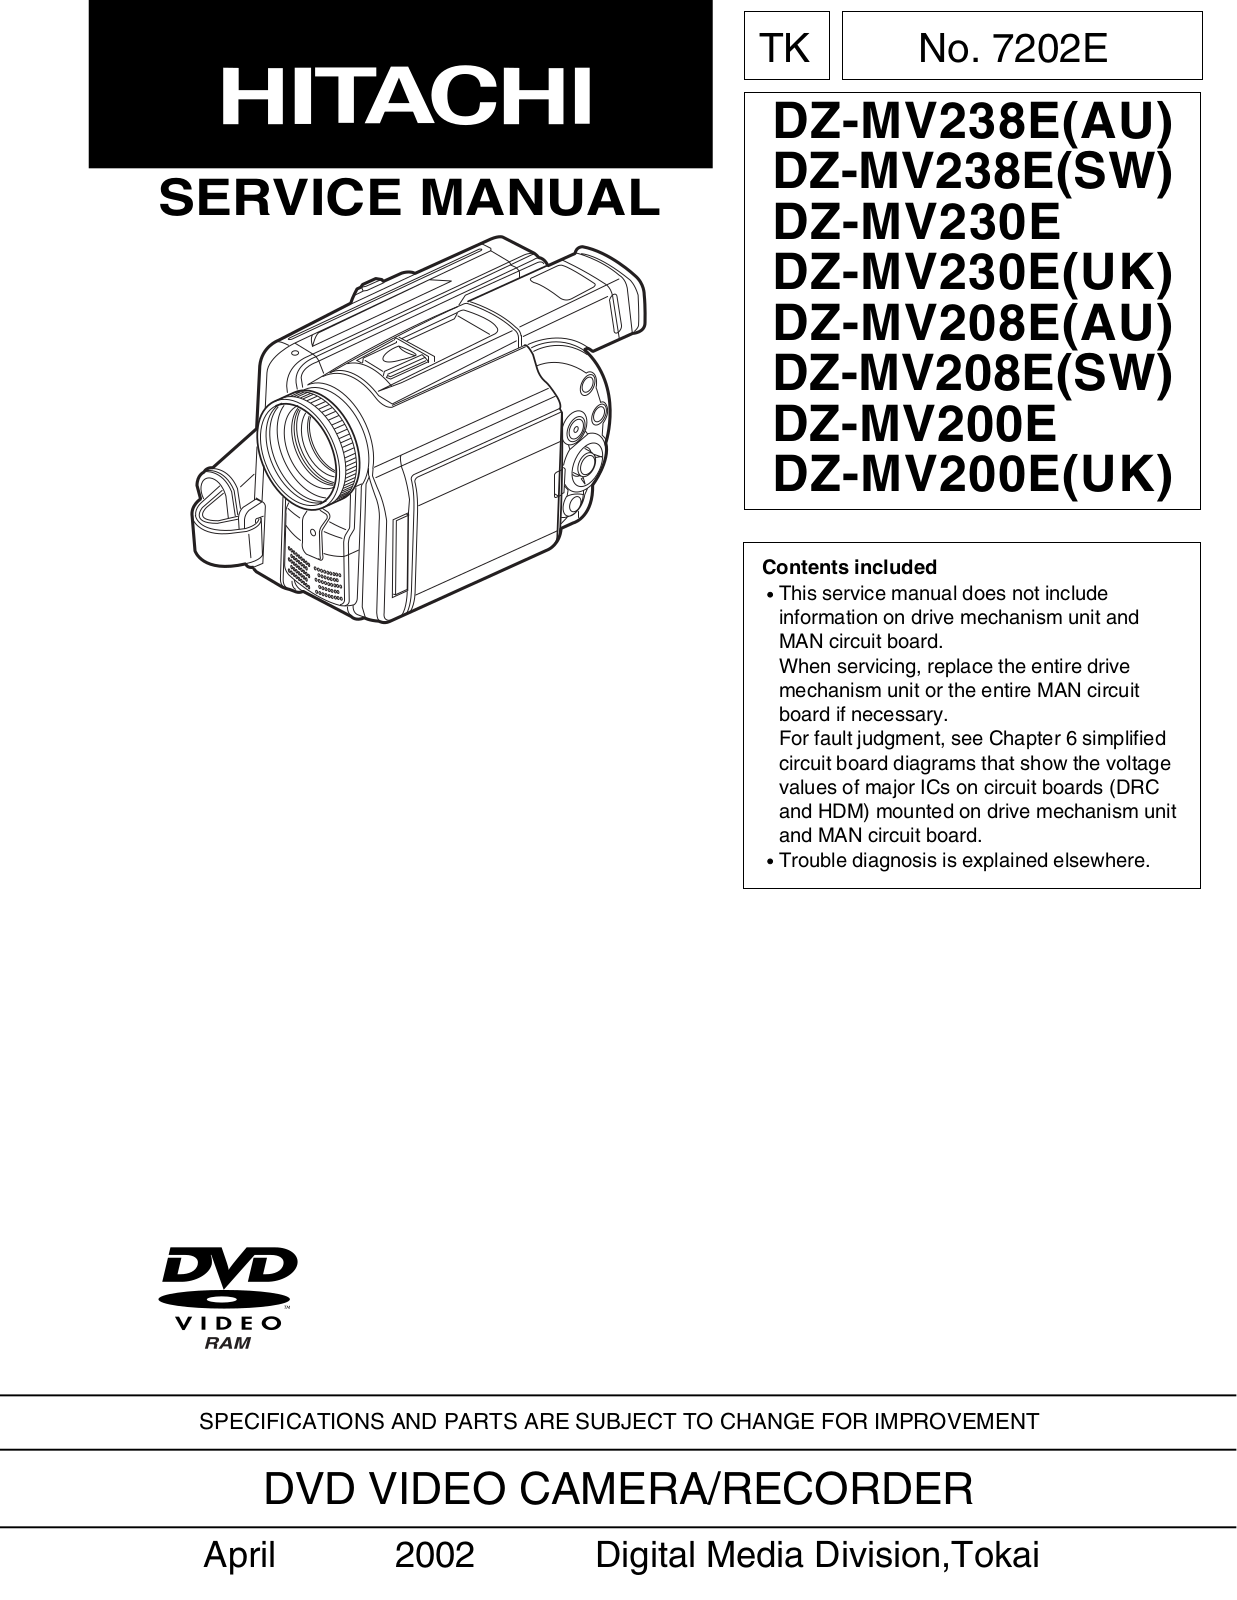 Hitachi dz-mv238e Service Manual